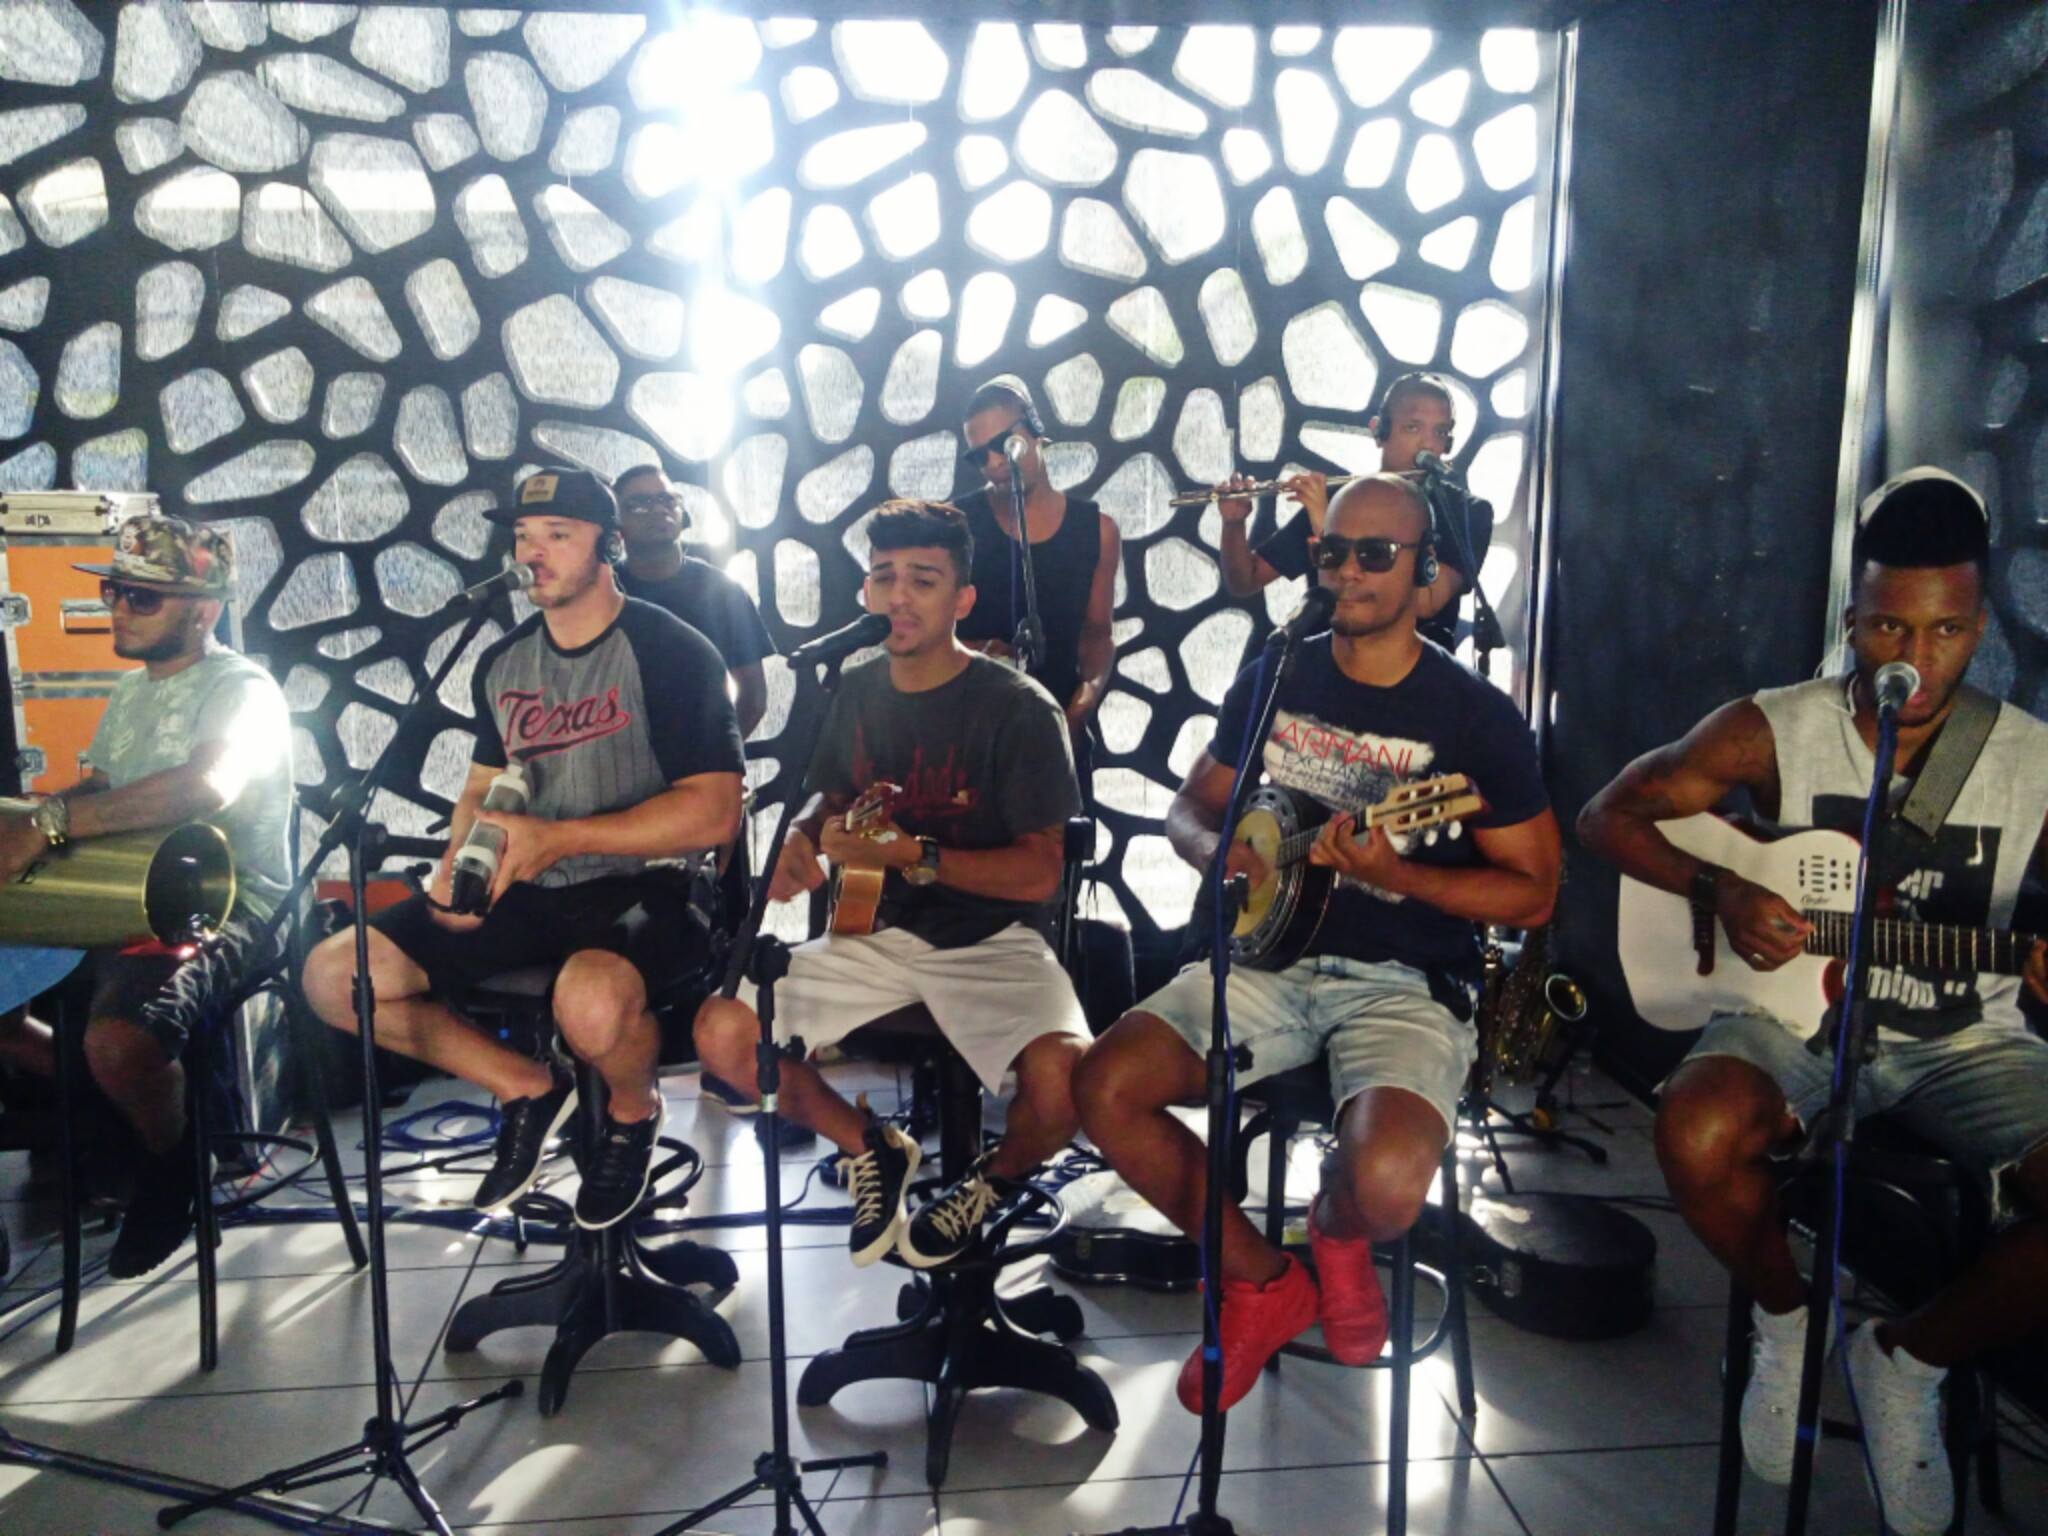 Tiroteo interrumpe el show en línea de una banda en Brasil 